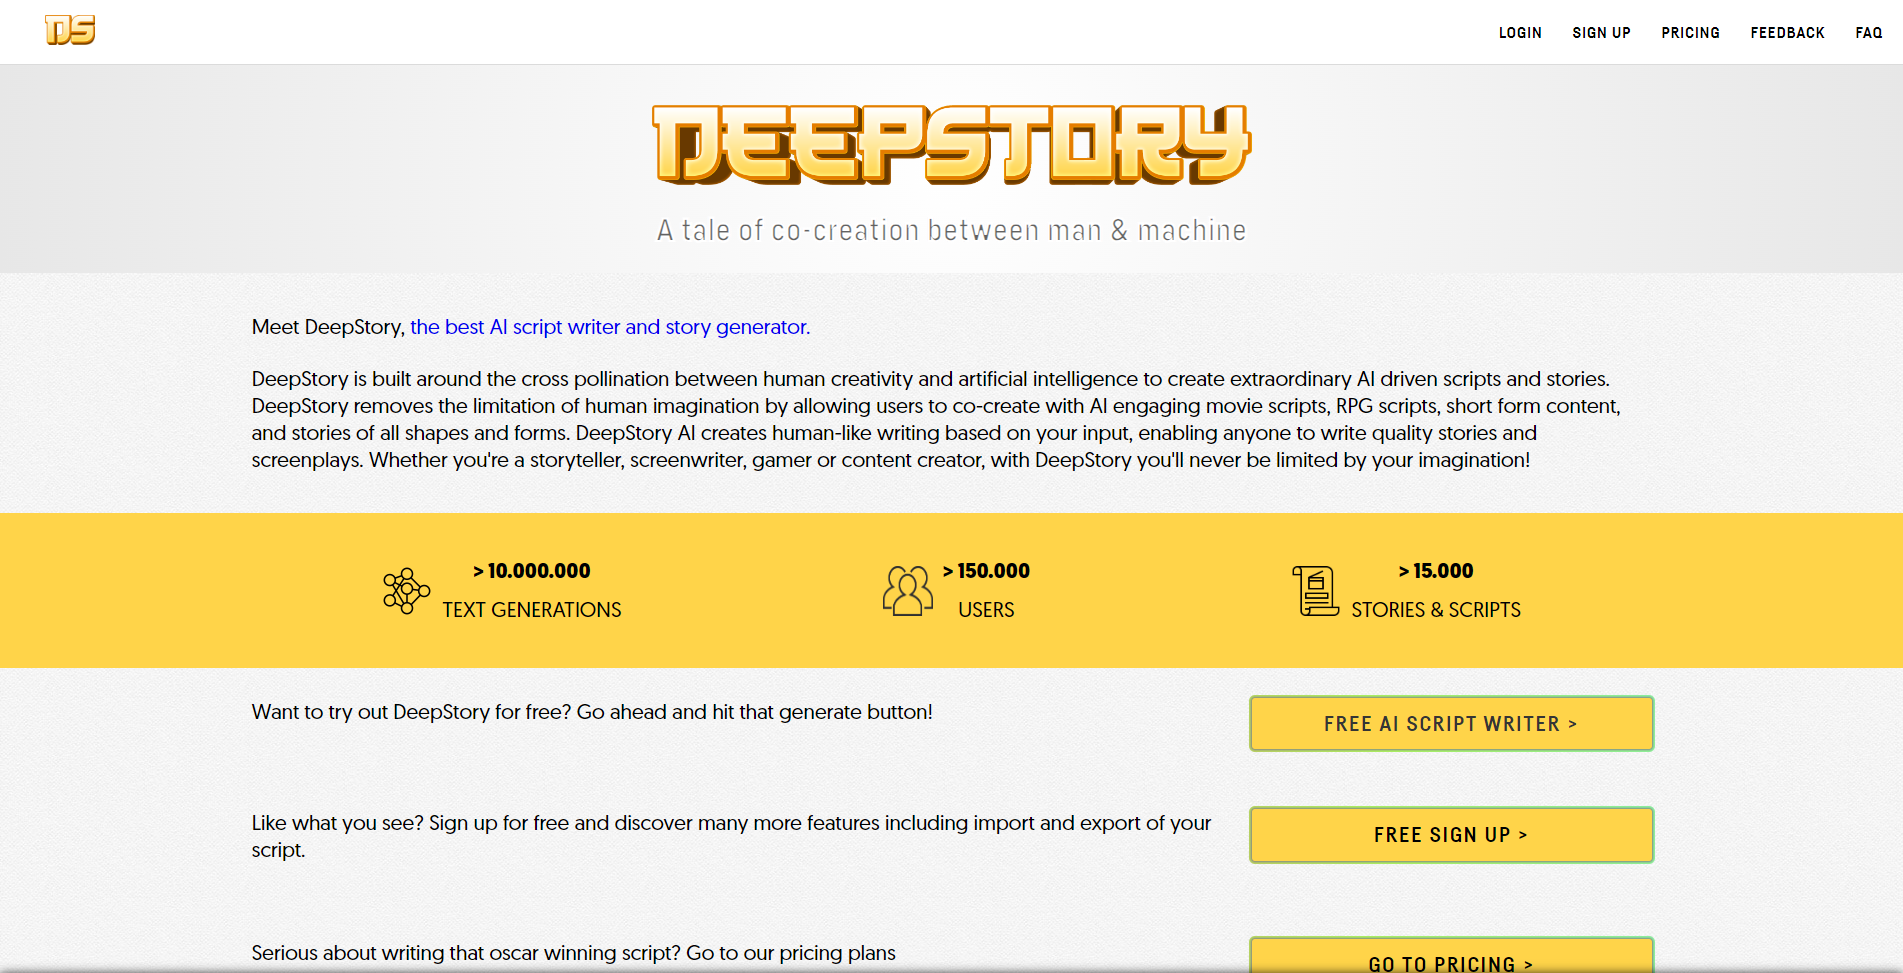 com.deepstory